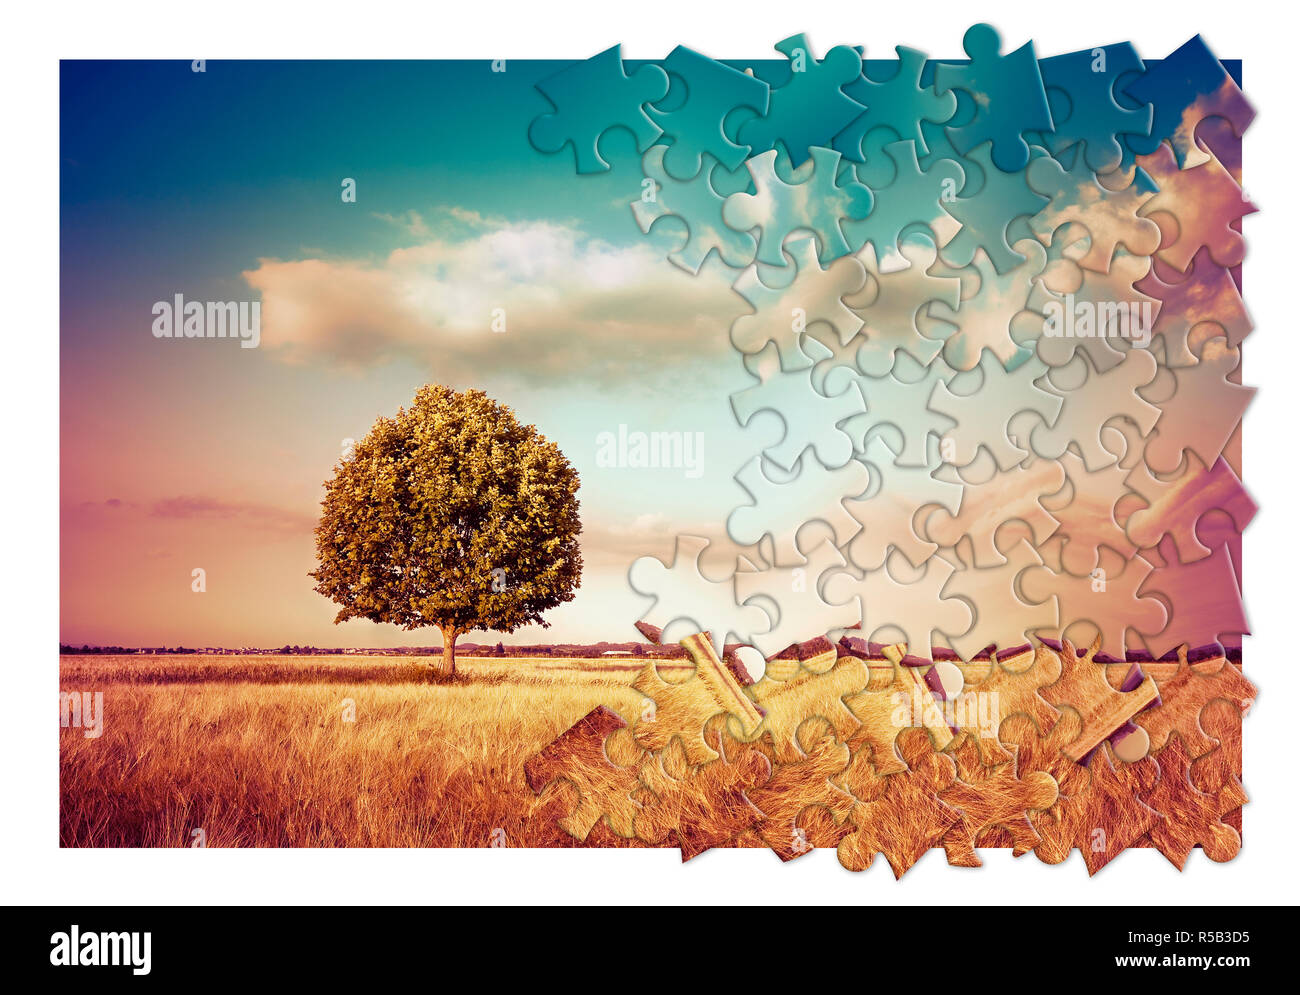 Isolierte Baum in einer ländlichen Szene in der Toskana (Italien) - Umweltschutz Konzept Bild im Puzzle Form Stockfoto